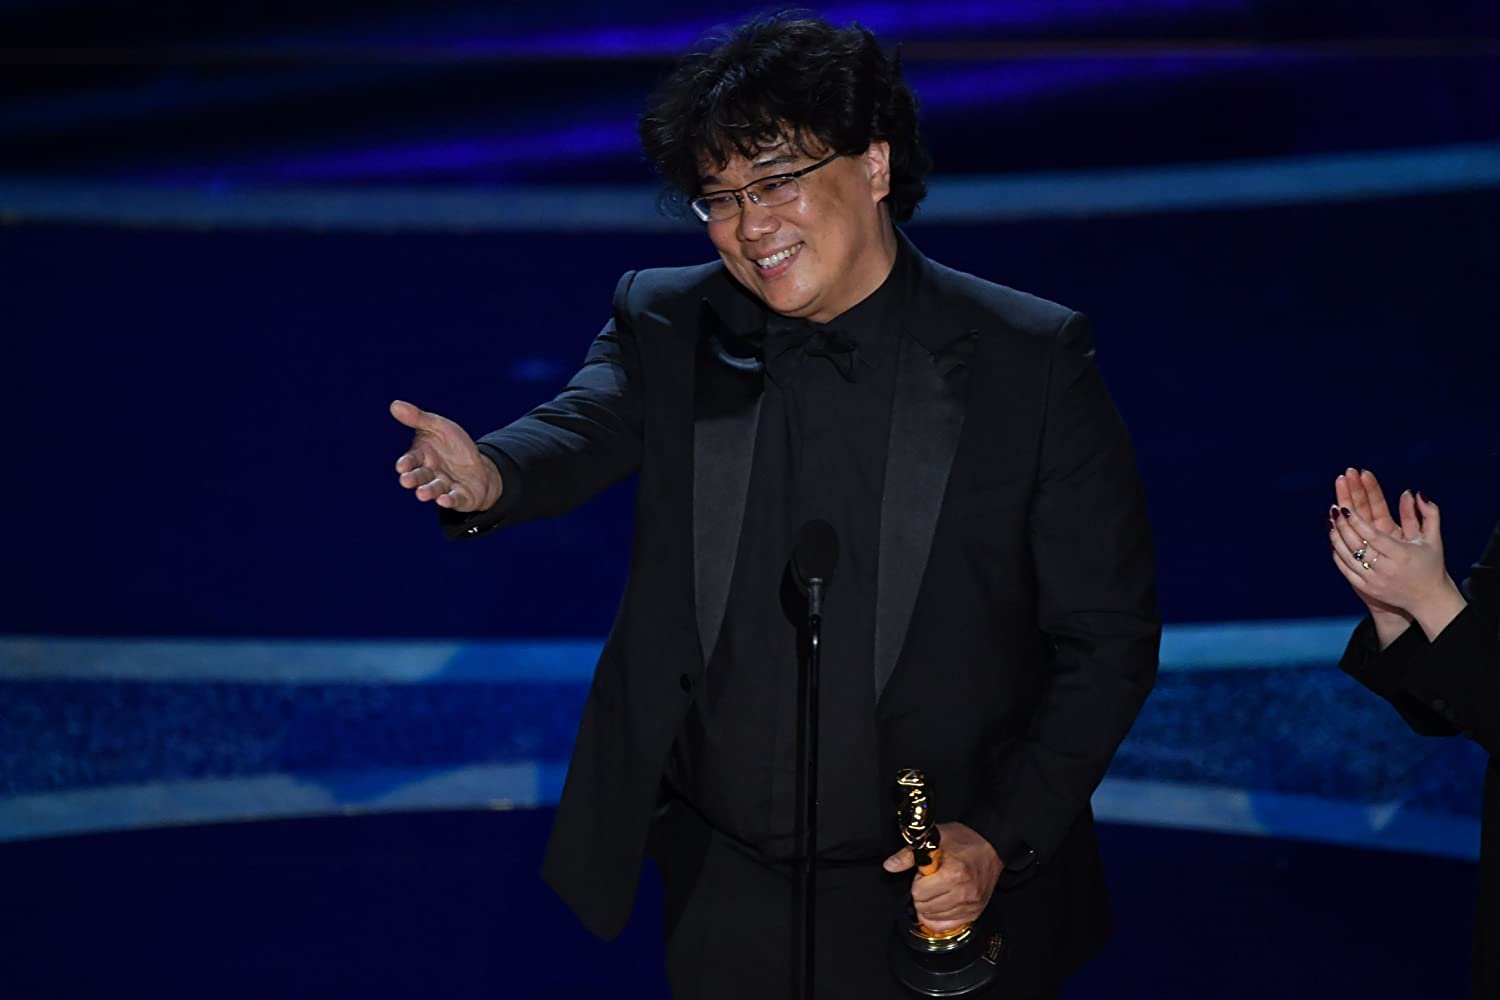 Diretor de 'Parasita', Bong Joon Ho, ao receber o prêmio de melhor diretor no Oscar 2020